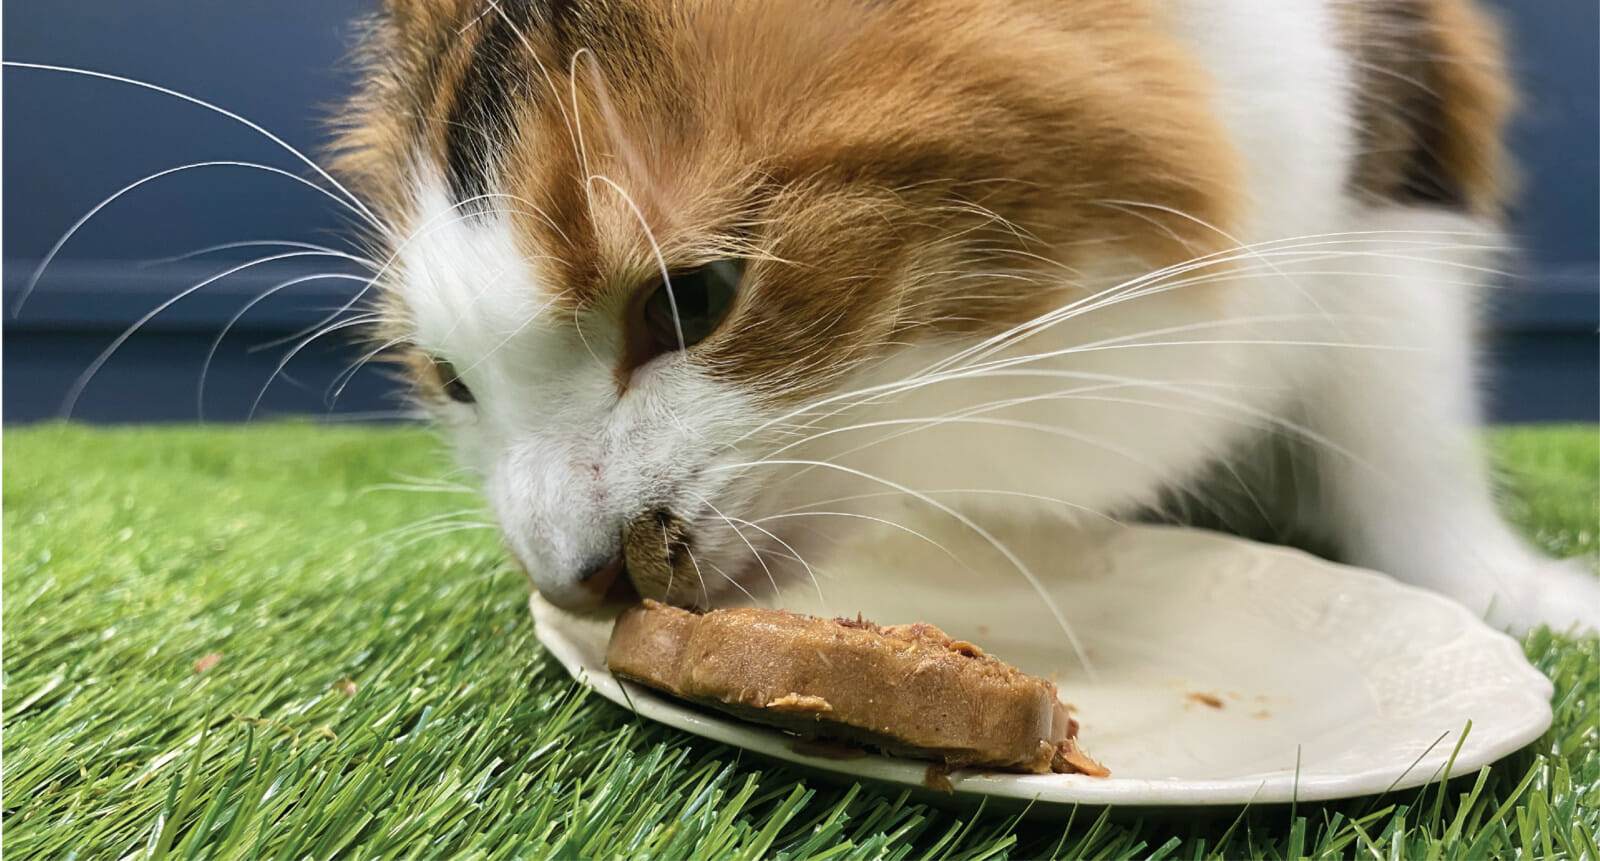 A cat licks a frozen cat treat off a plate